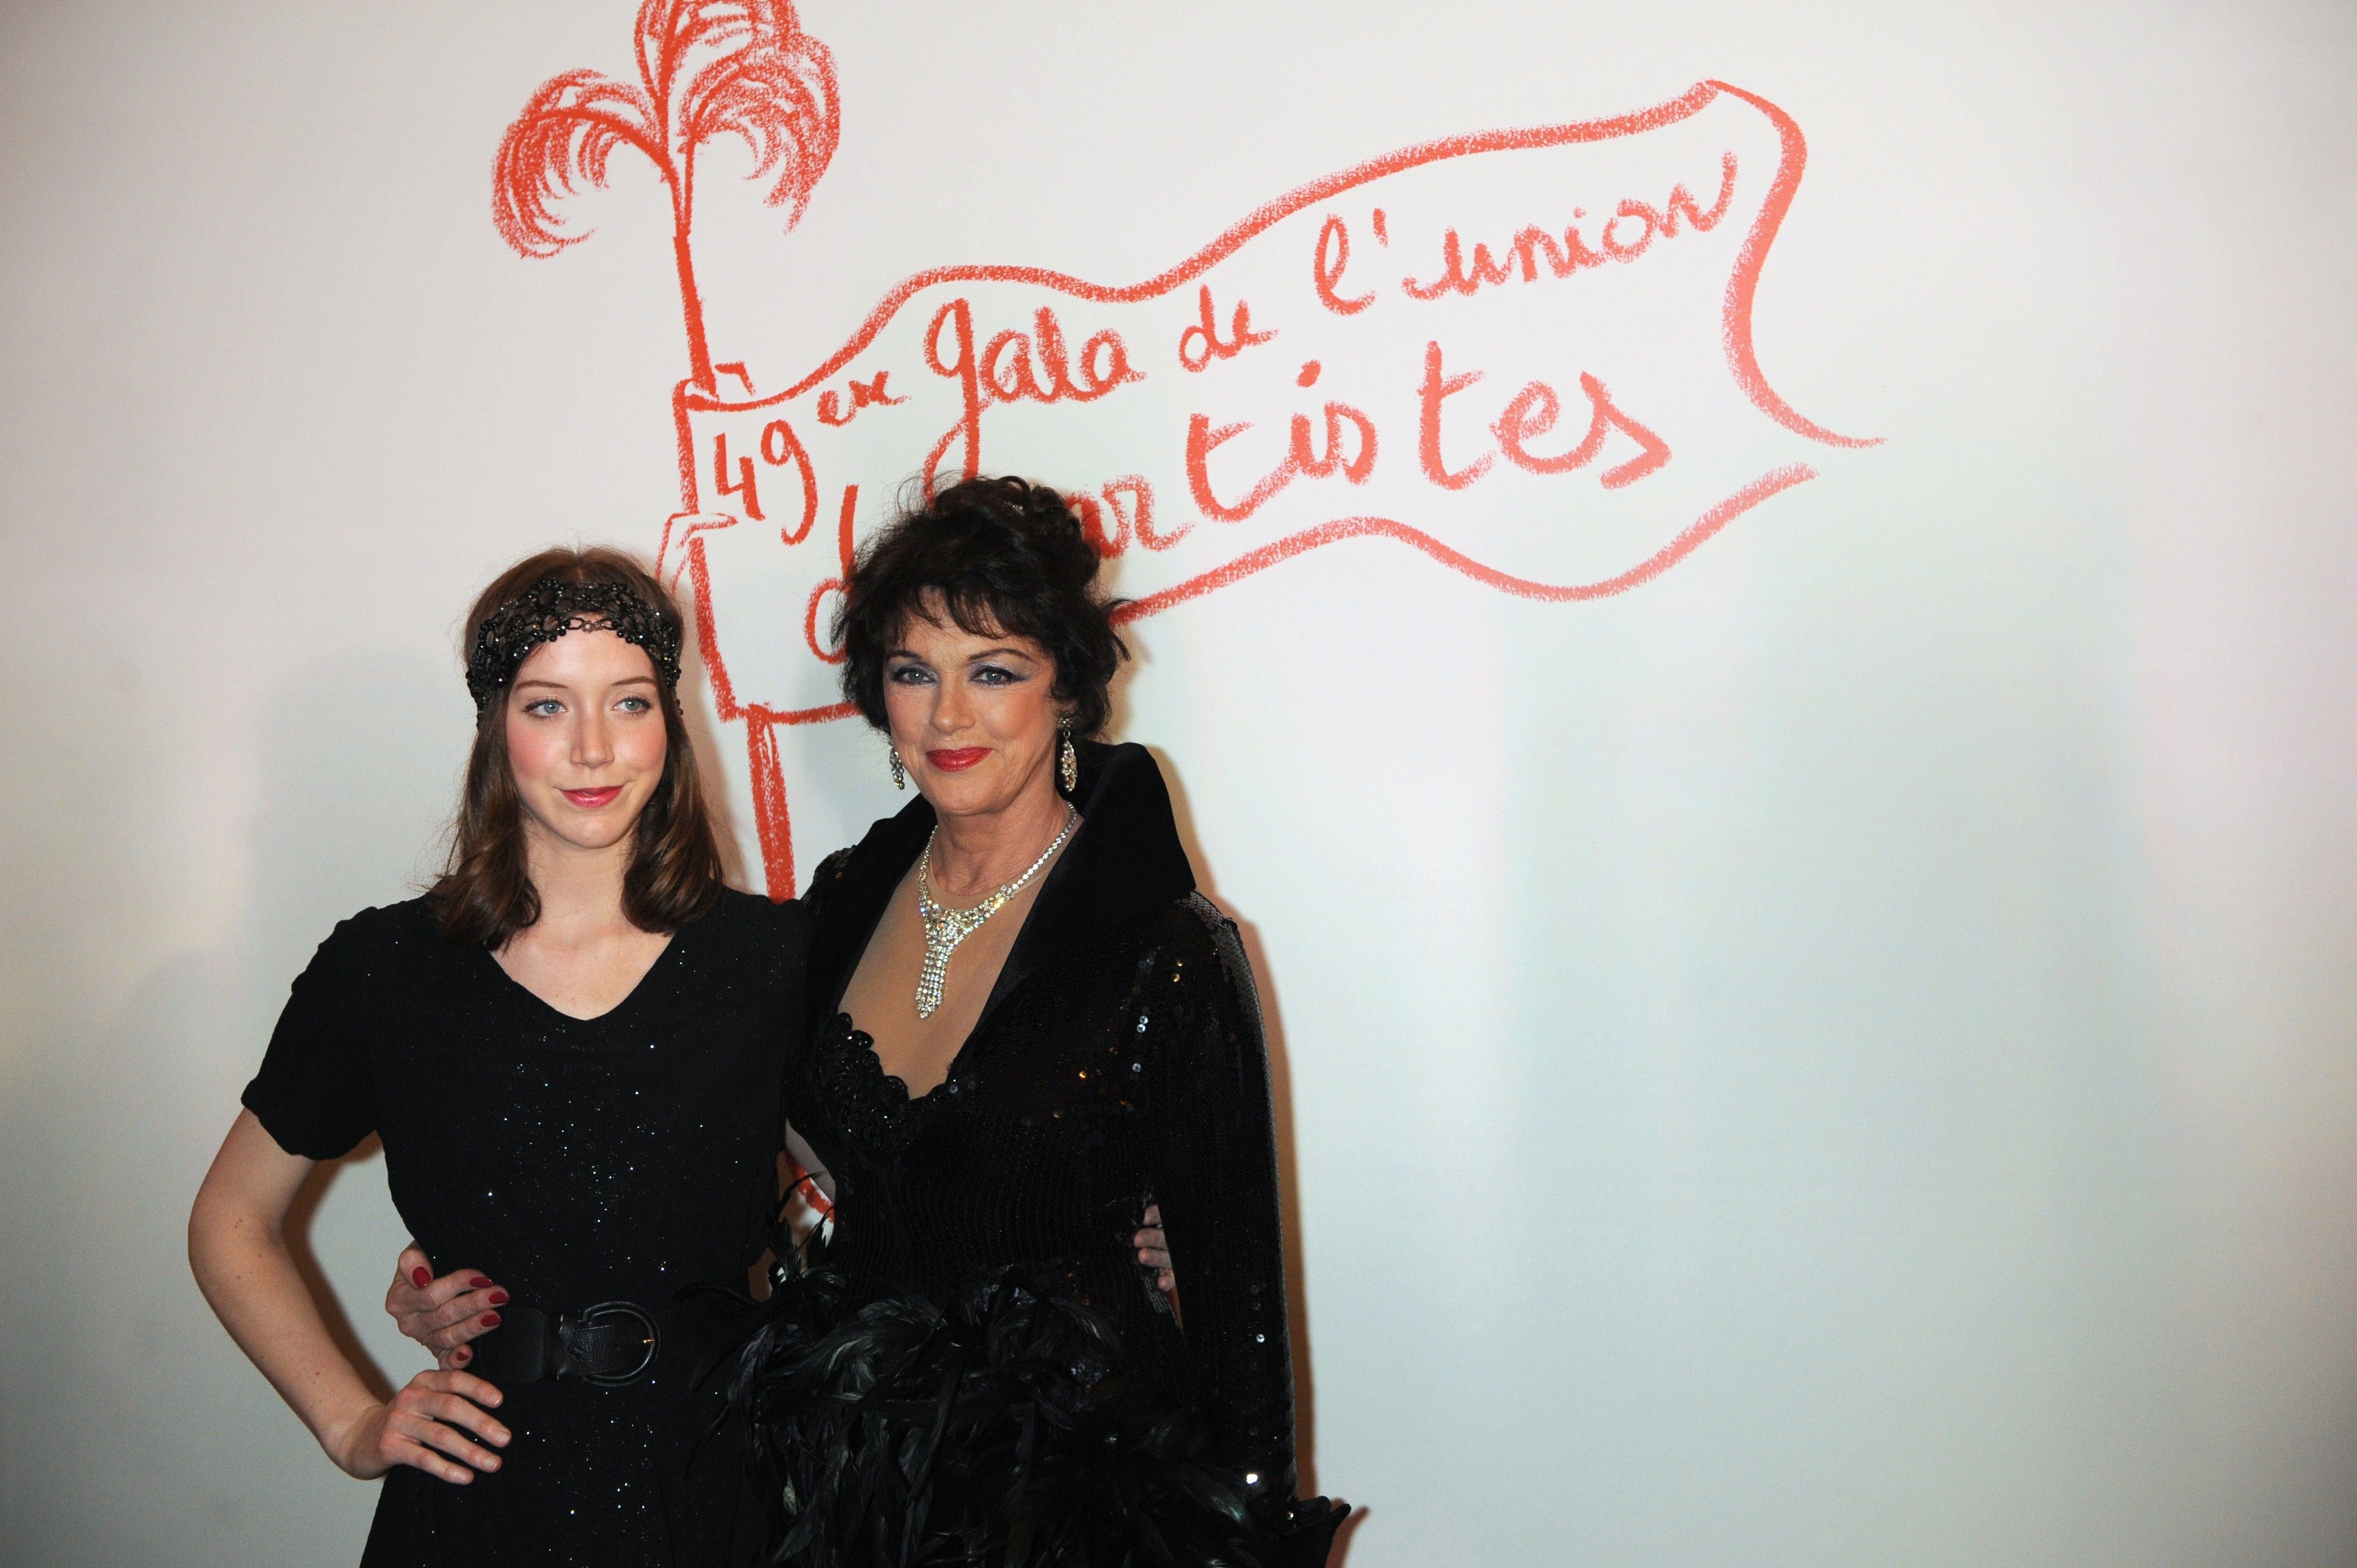  Anny Duperey (R) et sa fille Sara Giraudeau, le 29 mars 2010 au Cirque d'Hiver Bouglione à Paris. | Photo : Getty Images